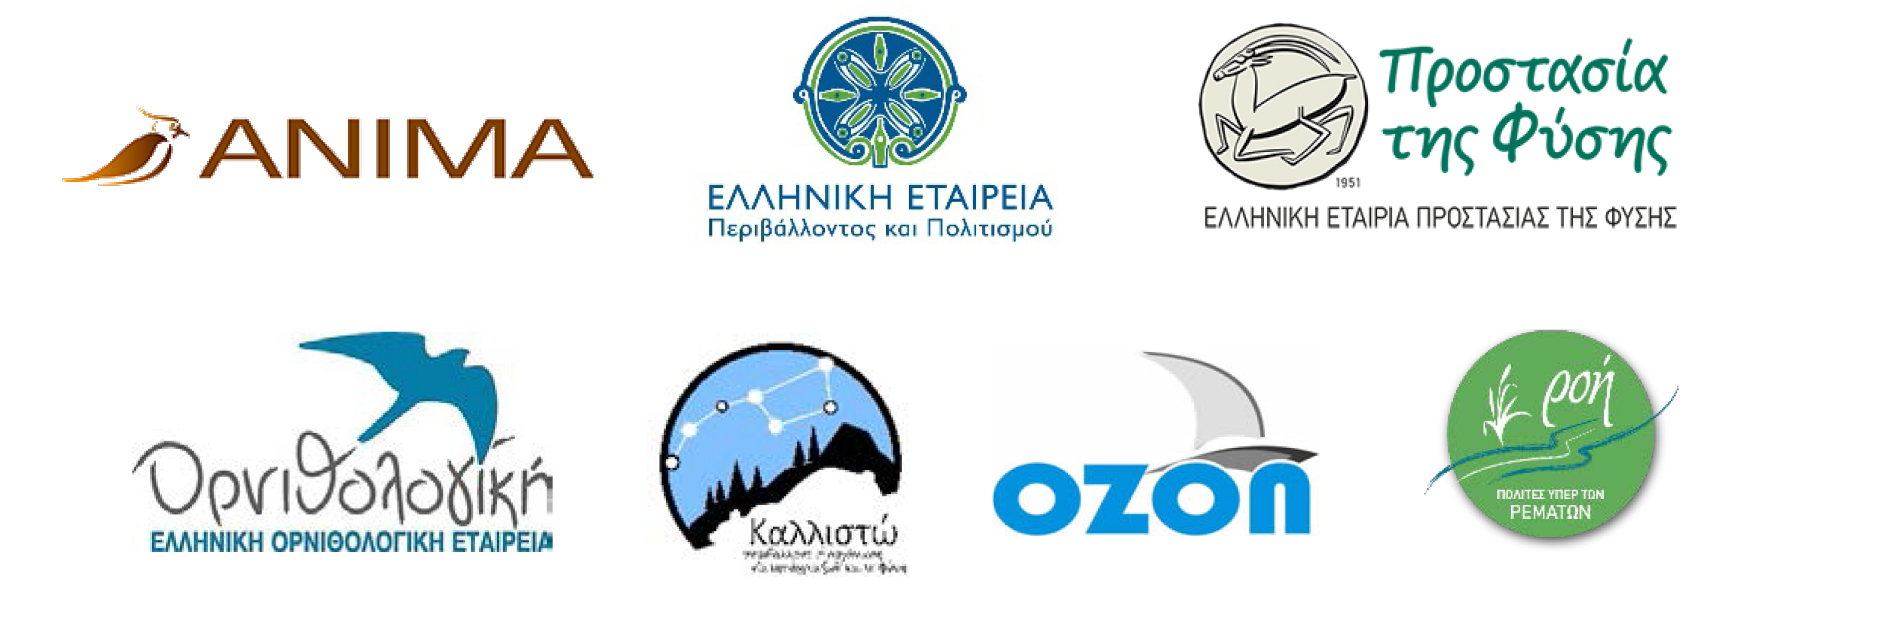 Marikes keimeno Oct22 logos NGOs